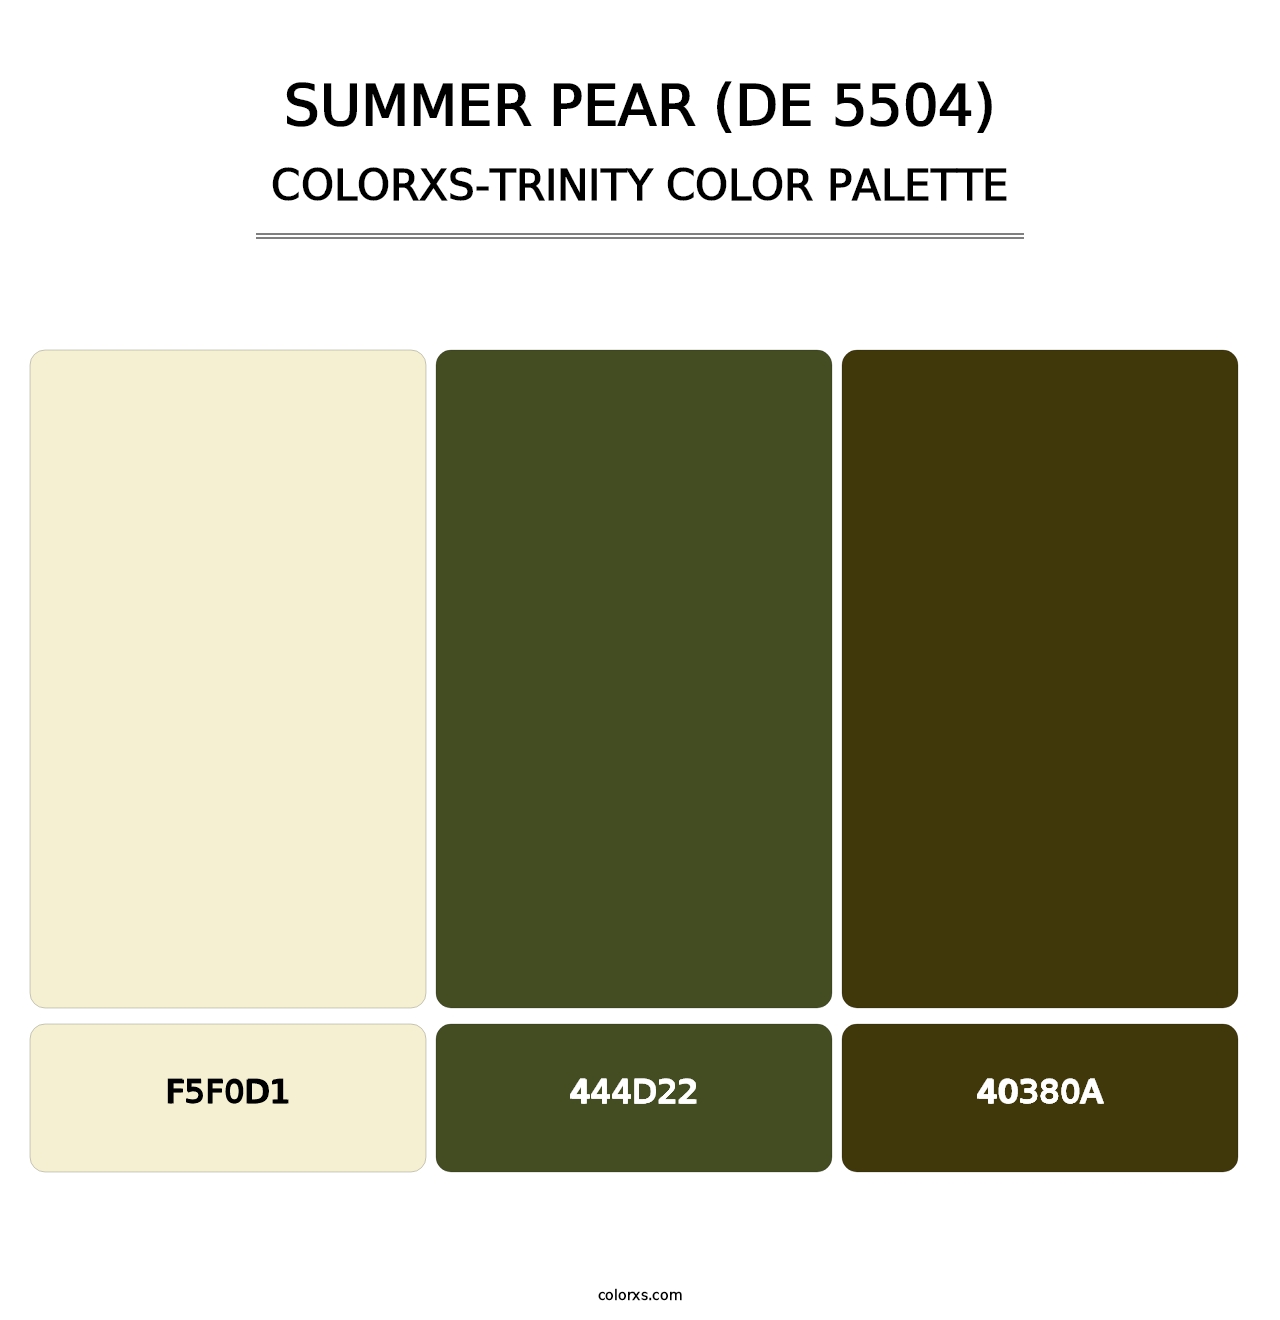 Summer Pear (DE 5504) - Colorxs Trinity Palette